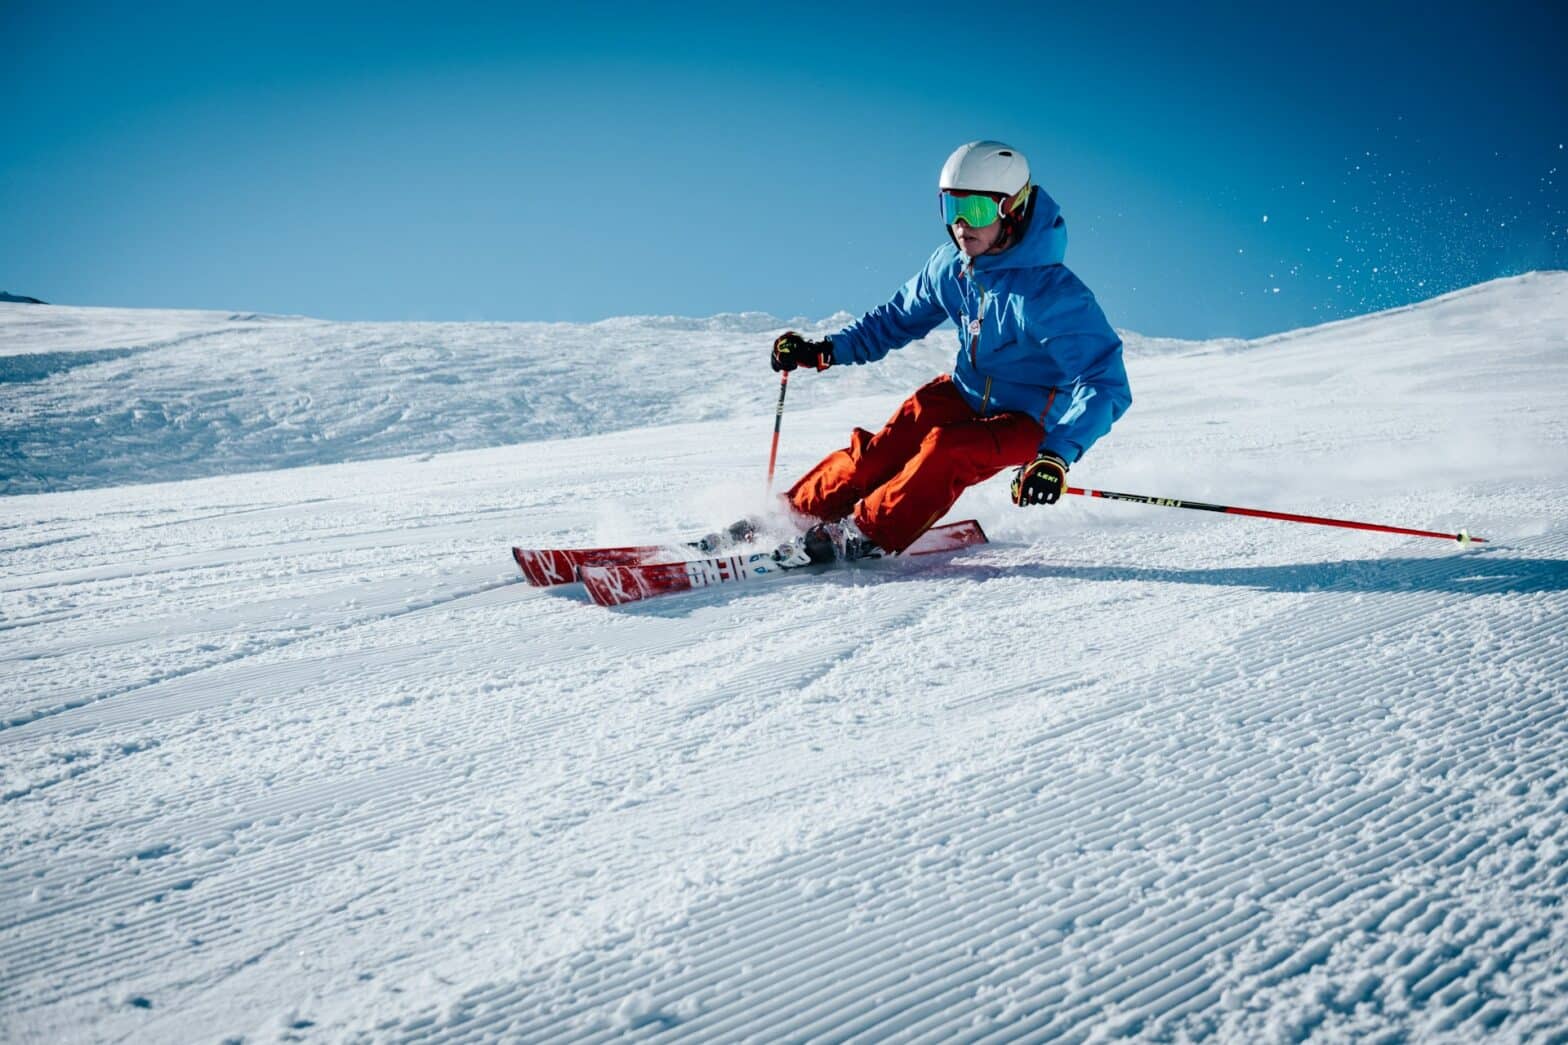 3 Paires Chaussettes de Ski Enfant 100%Coton Respirant Thermiques